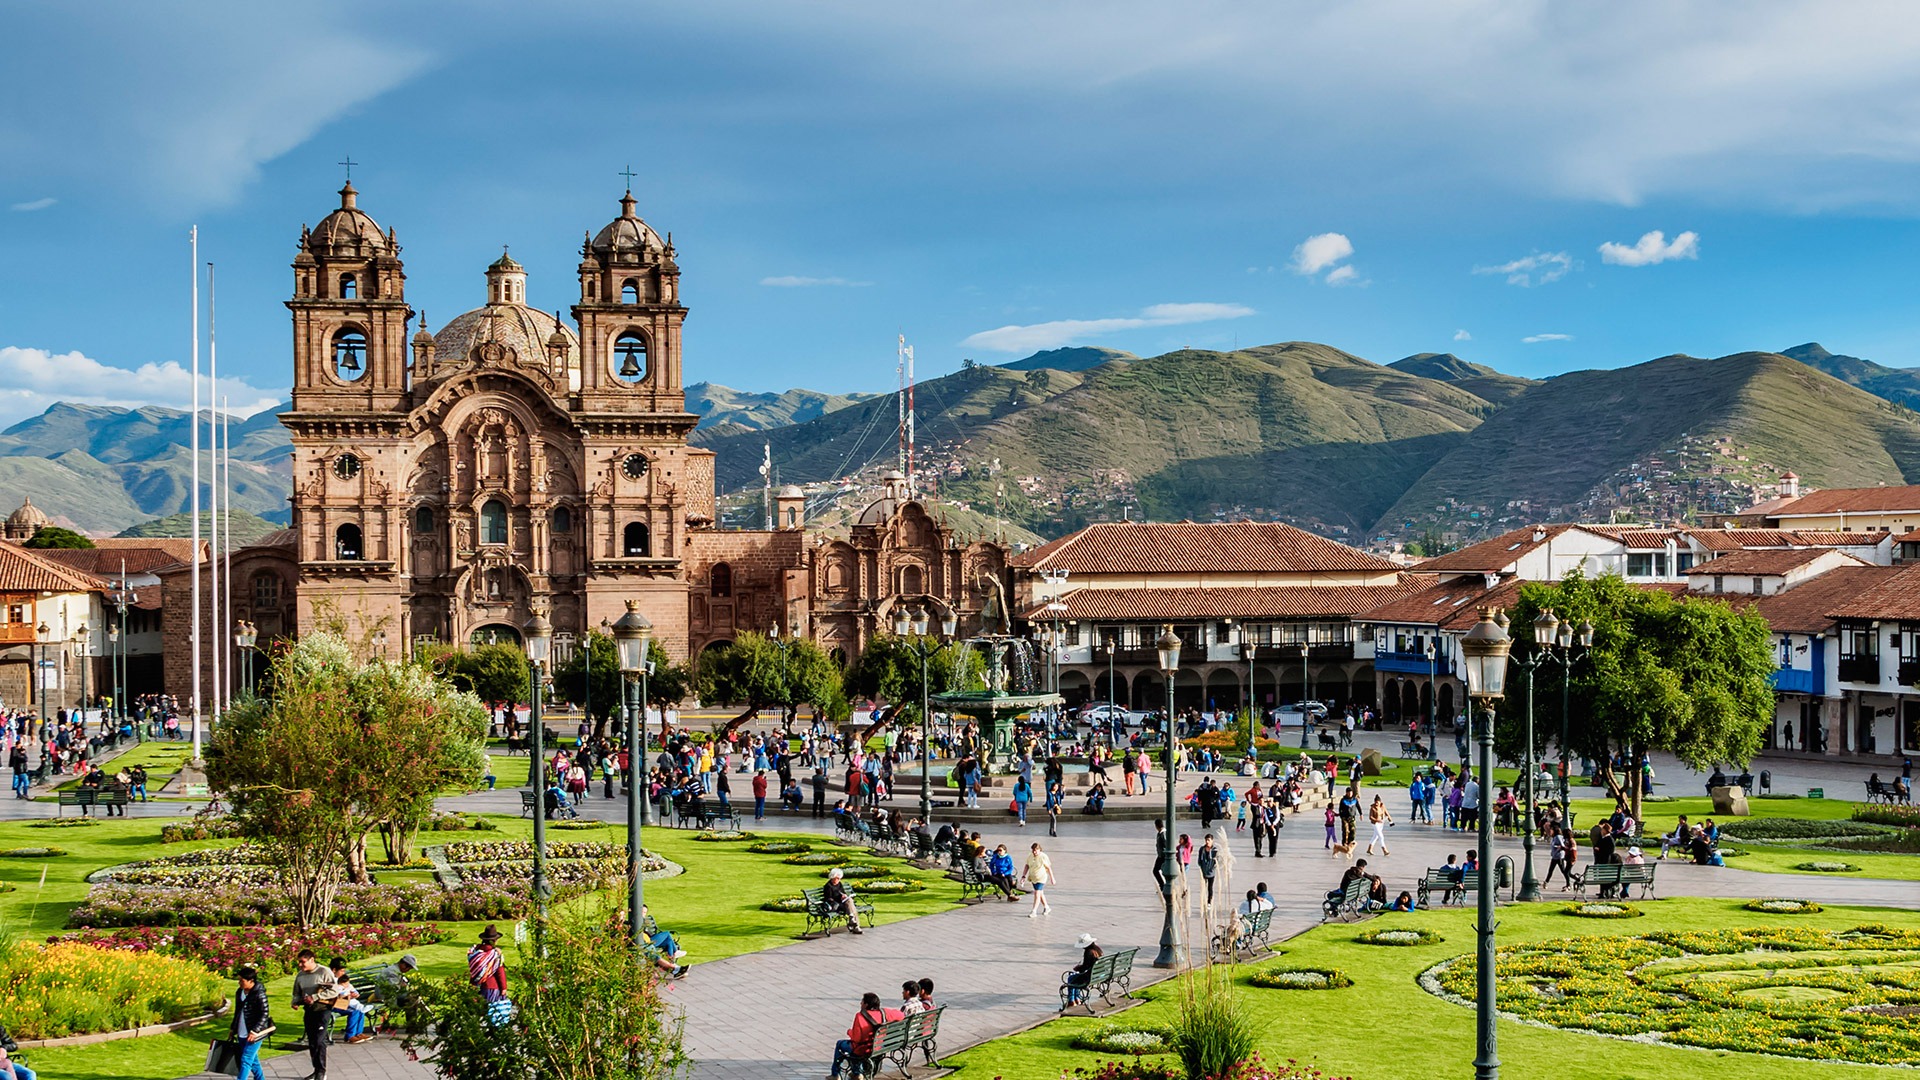 Main square and cathedral in Cusco, Peru